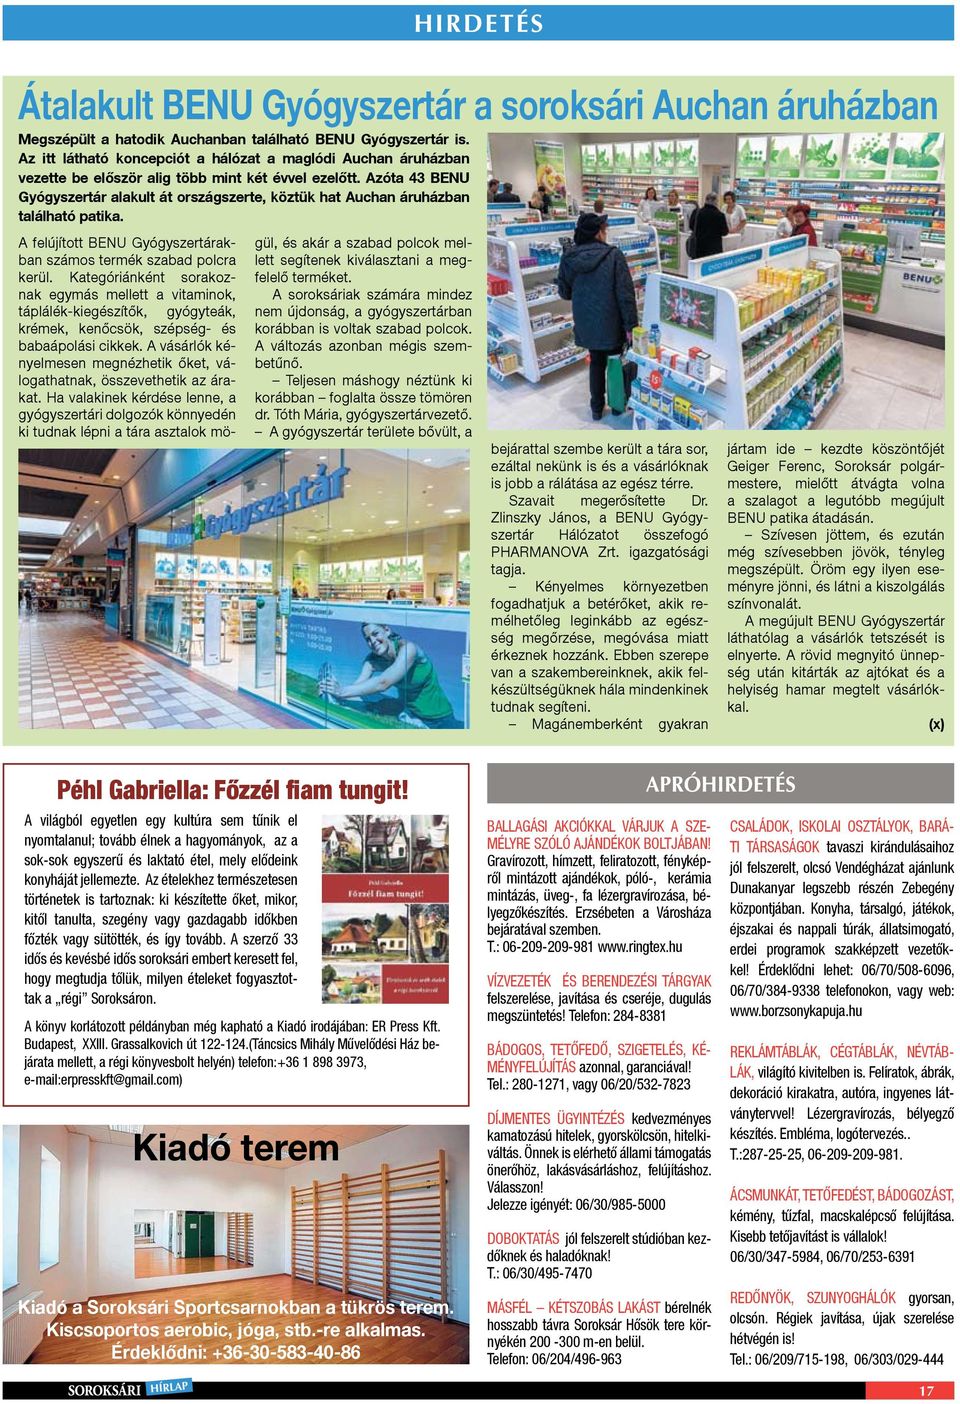 Azóta 43 BENU Gyógyszertár alakult át országszerte, köztük hat Auchan áruházban található patika. A felújított BENU Gyógyszertárakban számos termék szabad polcra kerül.